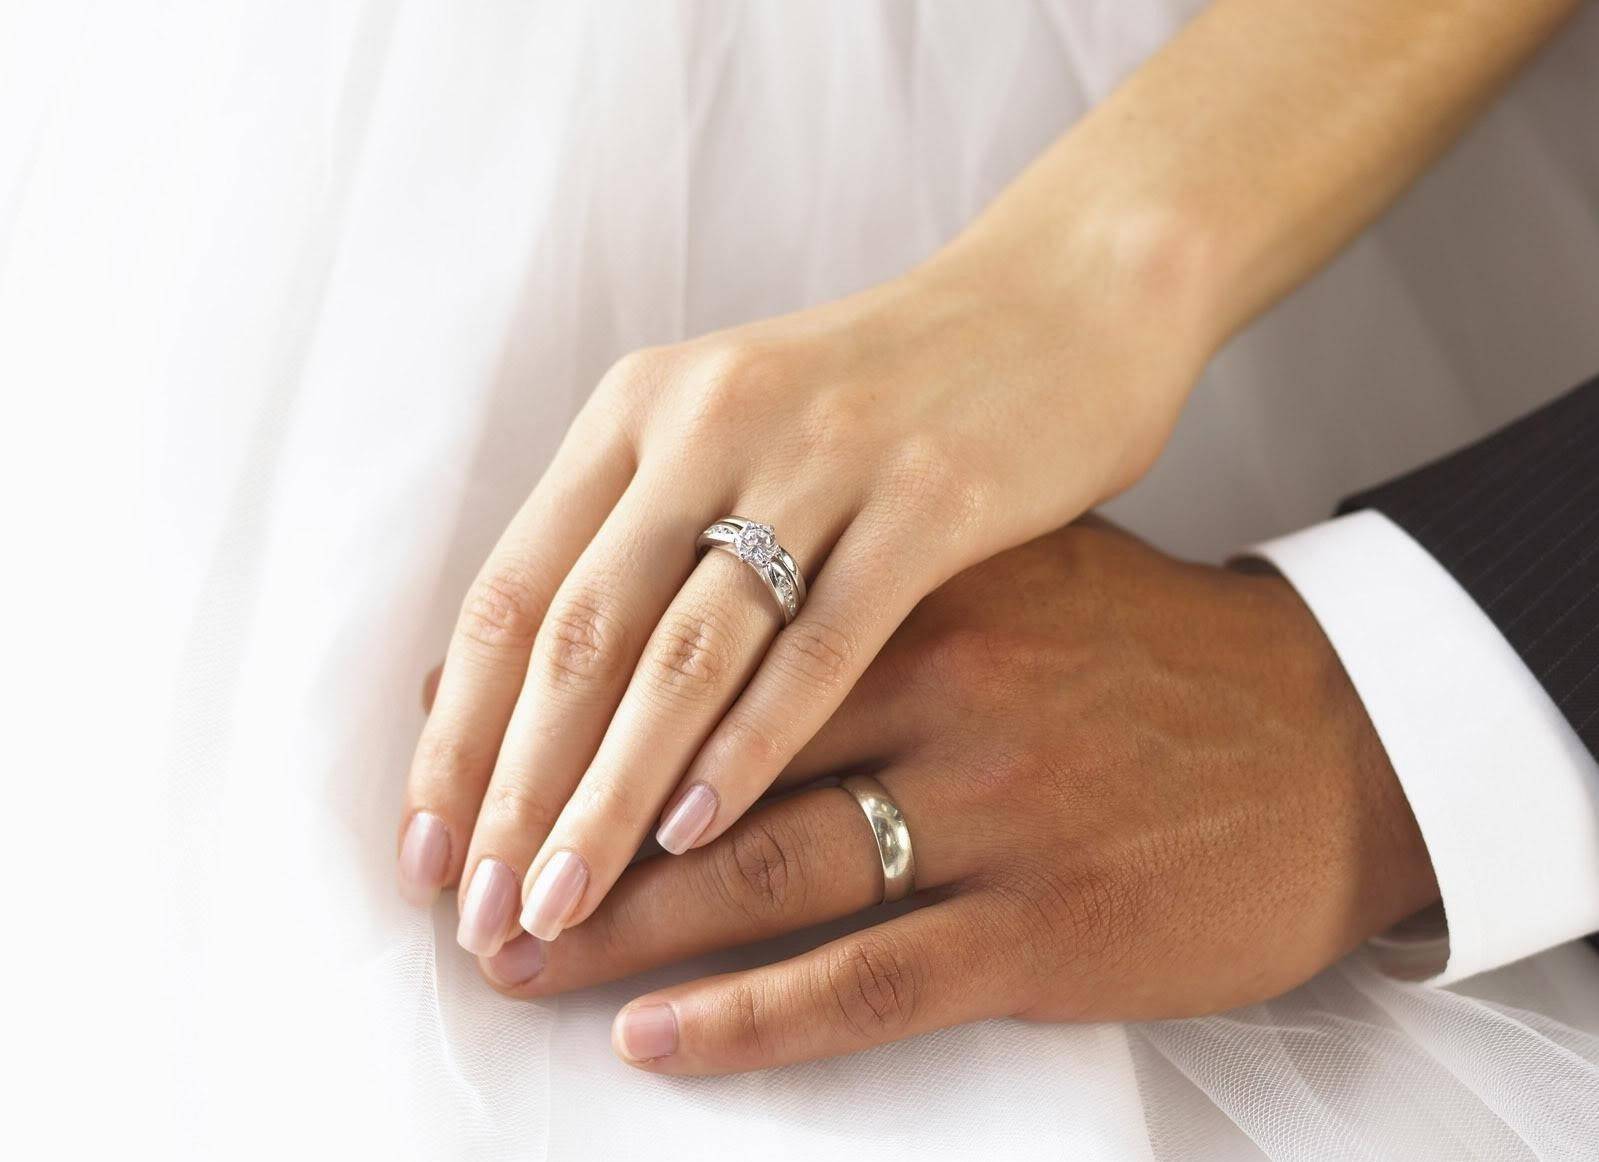 Обручальные кольца на руках у пары